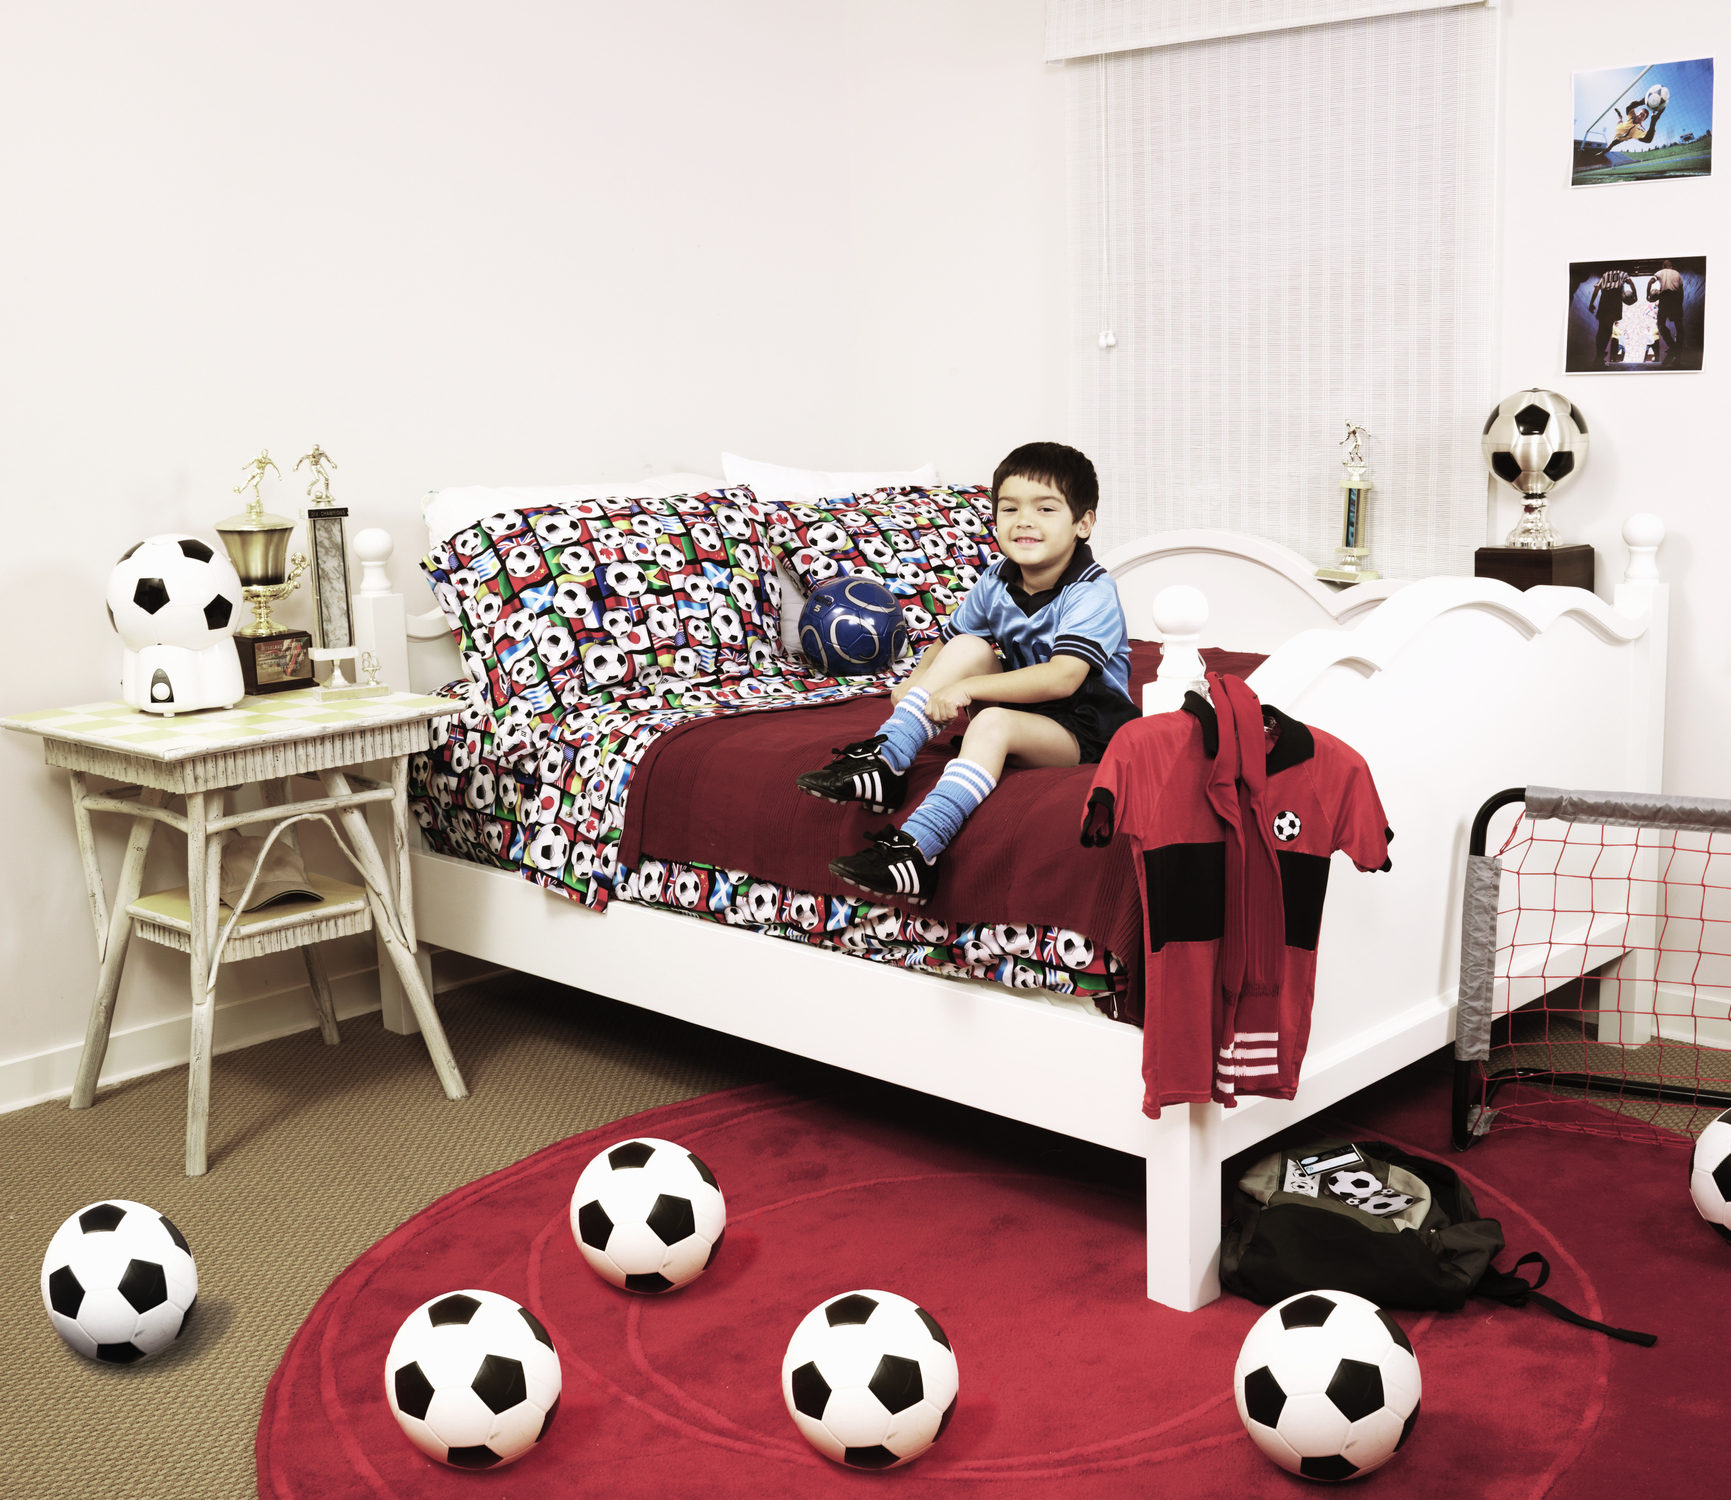 Inspiração de quarto temático para criança que ama futebol e já tem um time favorito.